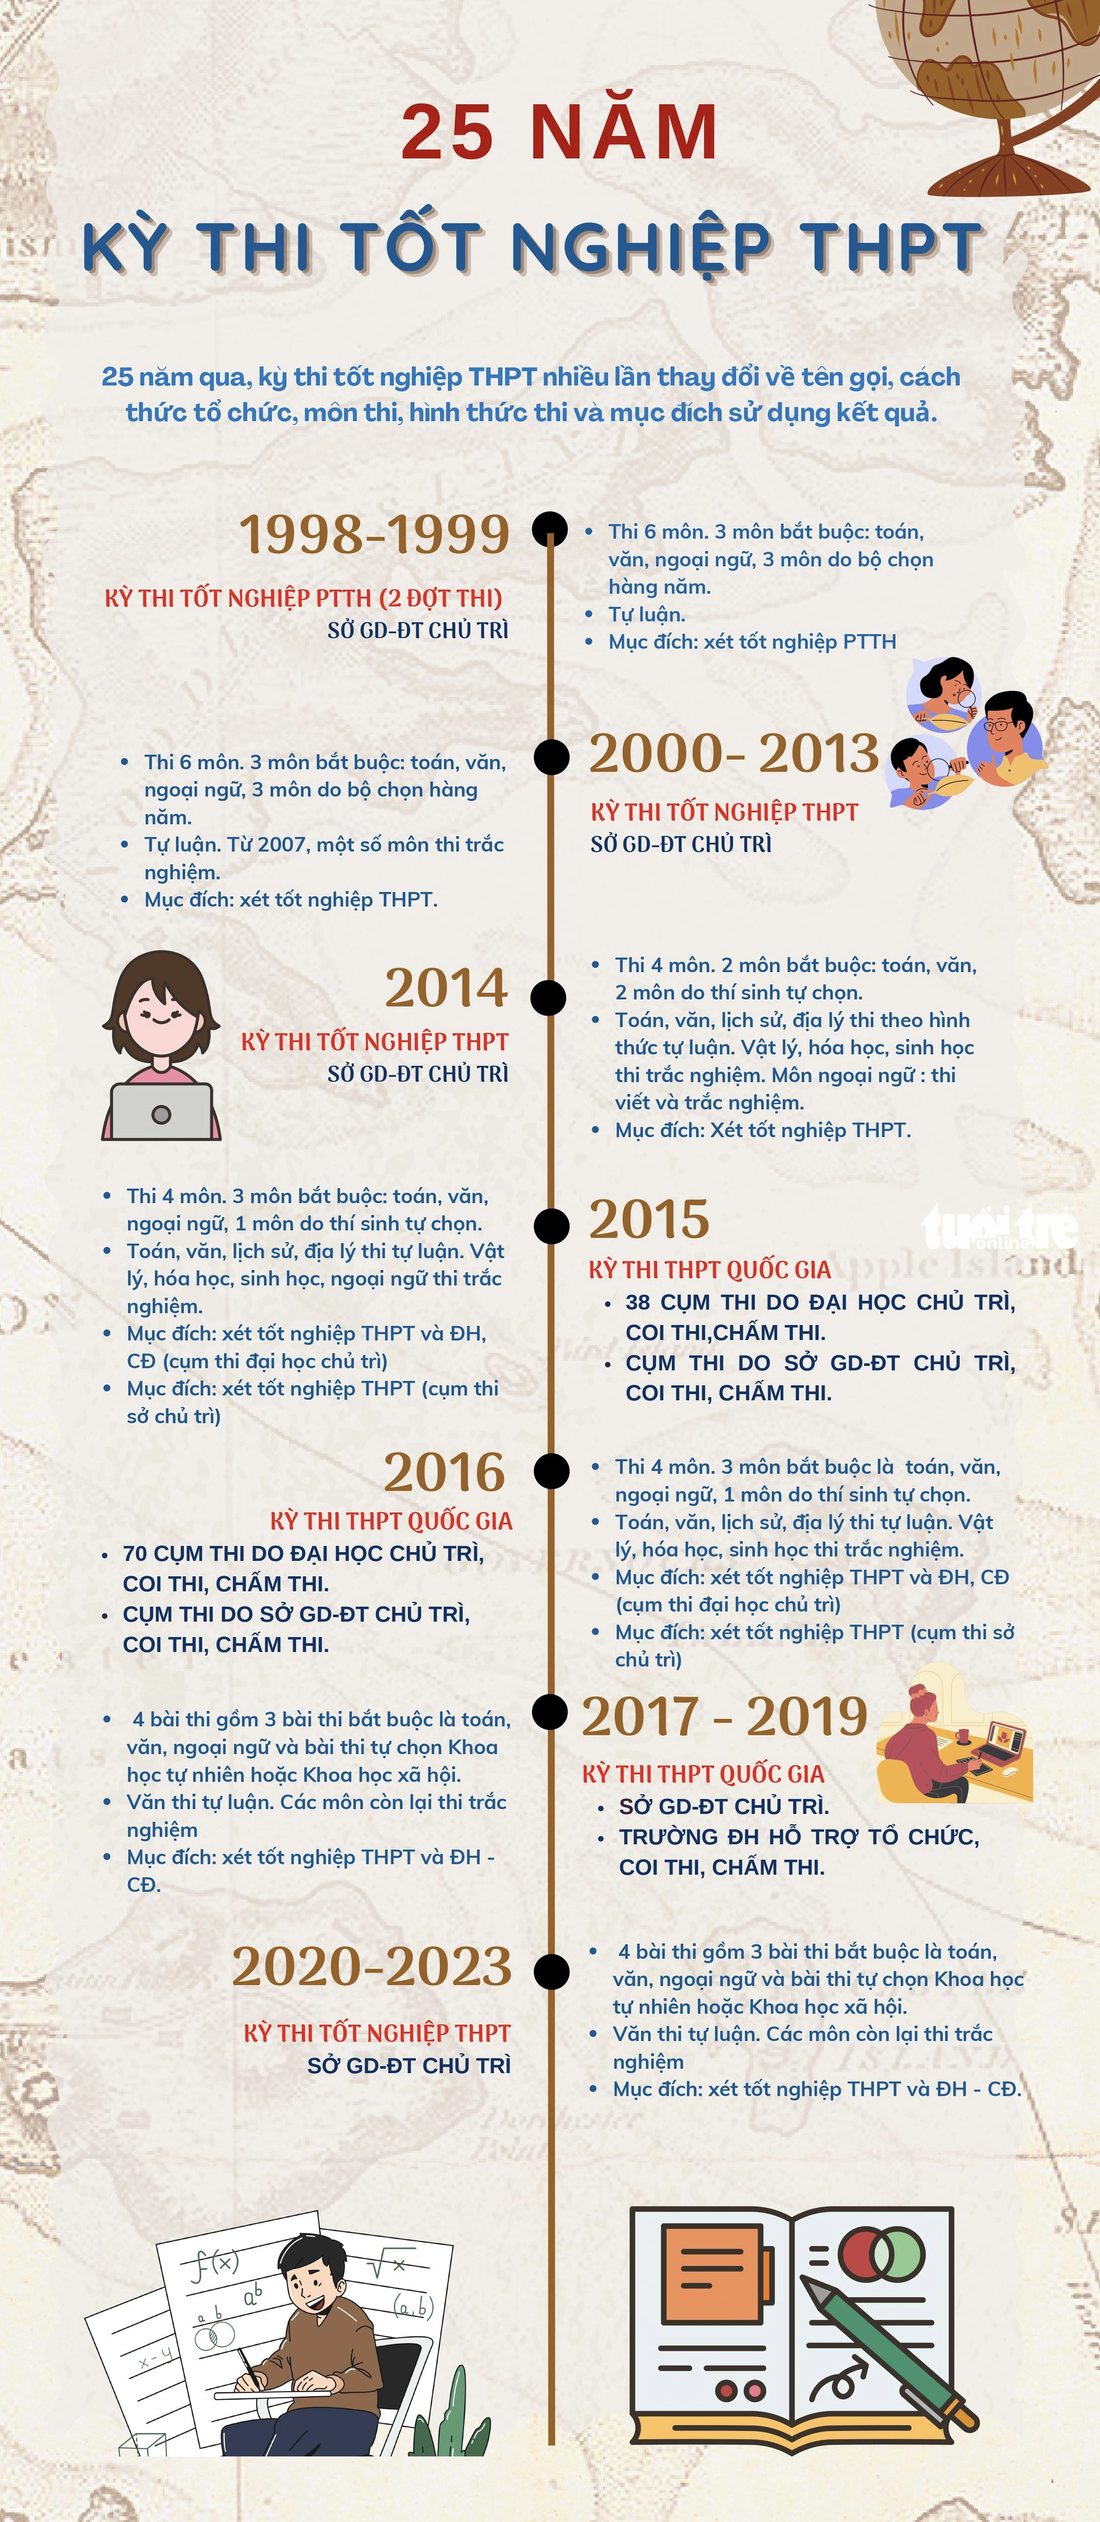 Những thay đổi của kỳ thi tốt nghiệp THPT trong 25 năm qua - Dữ liệu và đồ họa: MINH GIẢNG